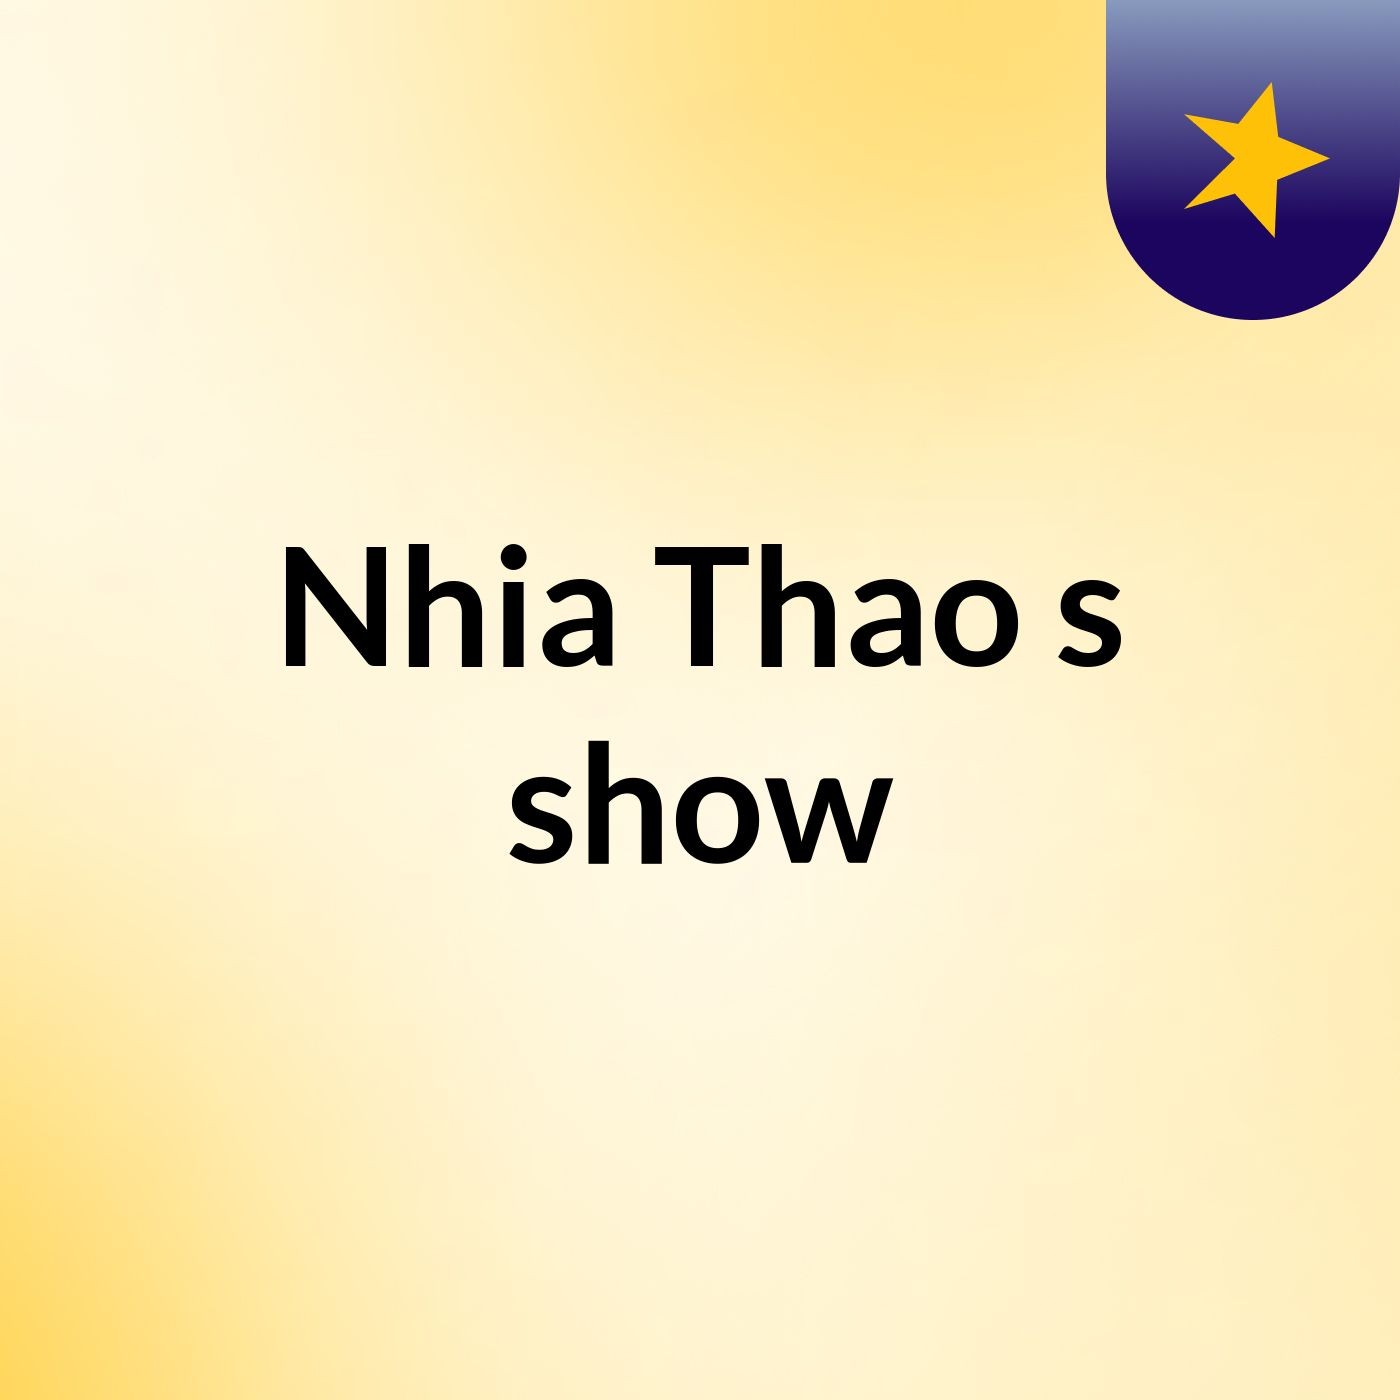 Nhia Thao's show